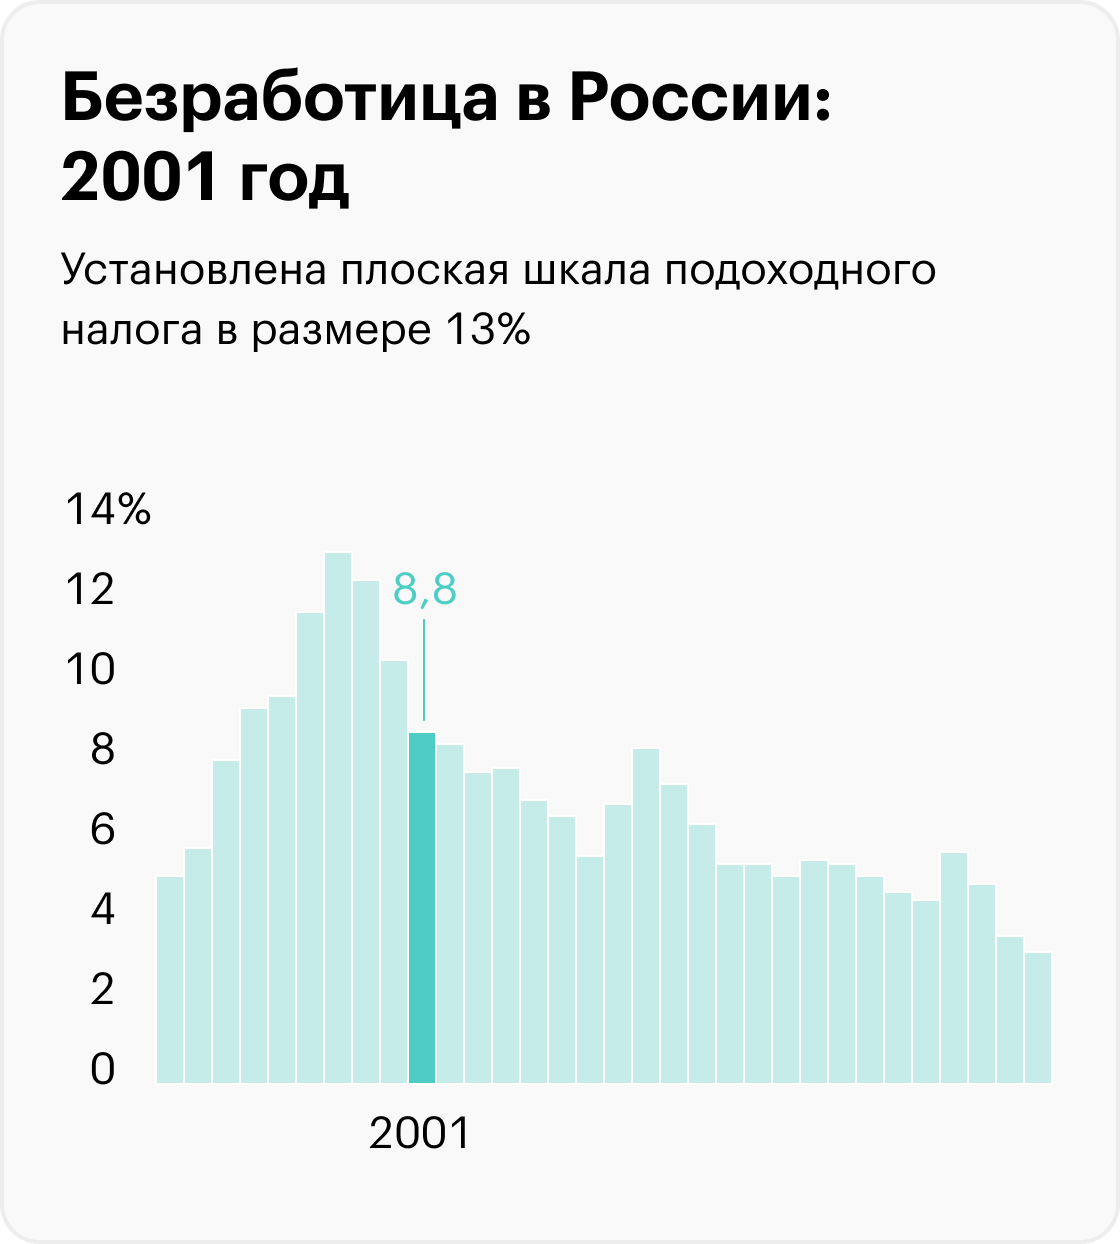 На графиках приведены значимые события, которые помогают понять экономический контекст, но не объясняют уровень безработицы. Информация до 2017 года рассчитана для населения в возрасте 15⁠—⁠72 лет, с 2017 — от 15 лет. Источники: Росстат (1992⁠—⁠2010), Росстат (2011⁠—⁠2014), Росстат (2015⁠—⁠2020), Минтруд (2021), Минтруд (2022), МВФ (прогноз на 2023)